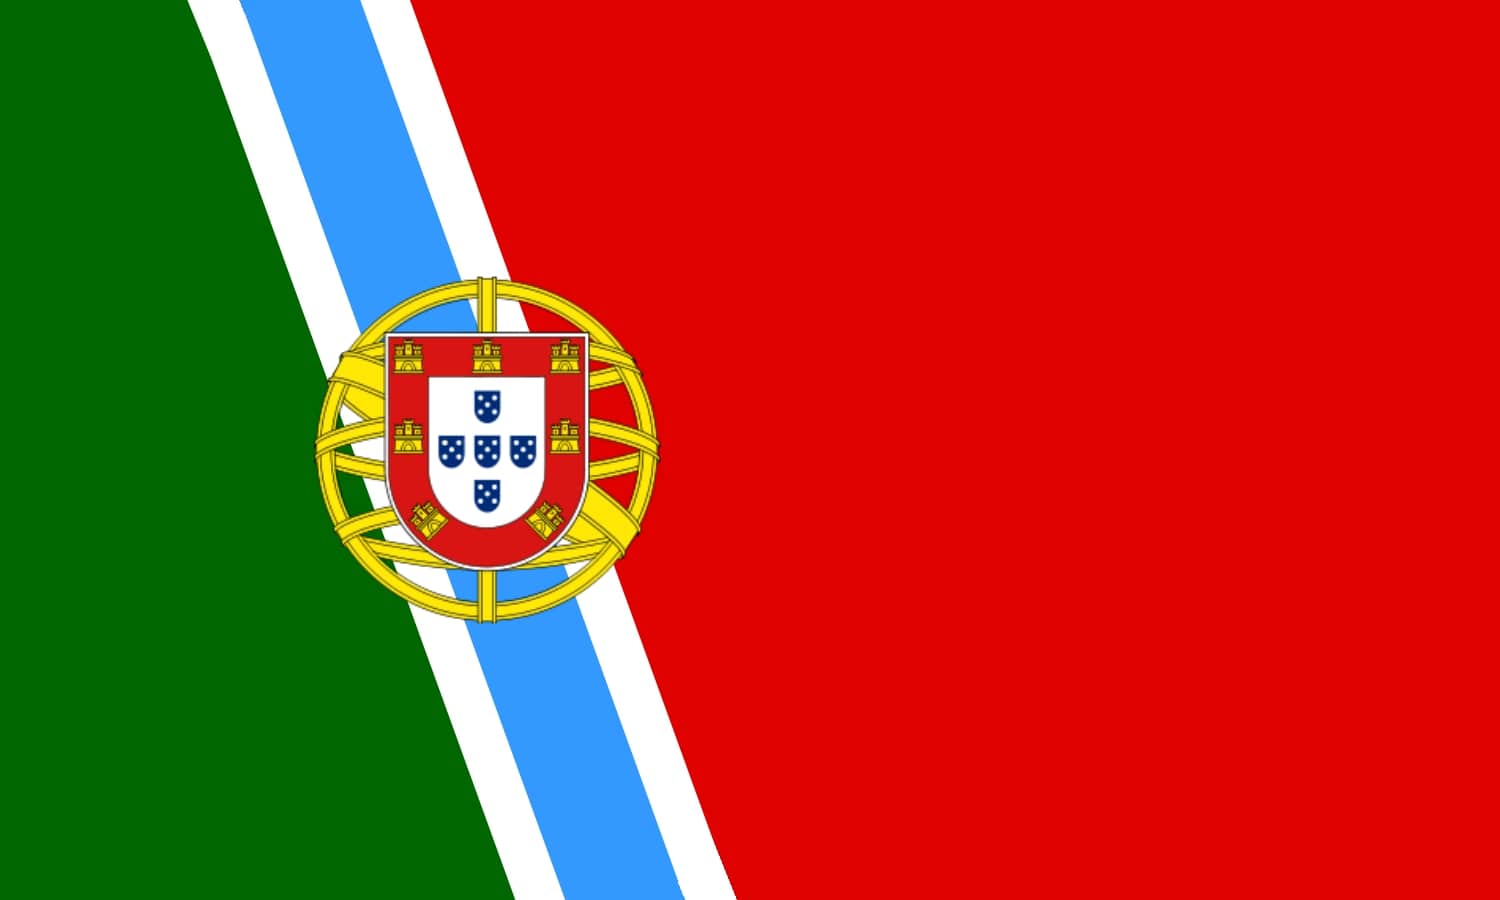 União de Portugal e Galiza